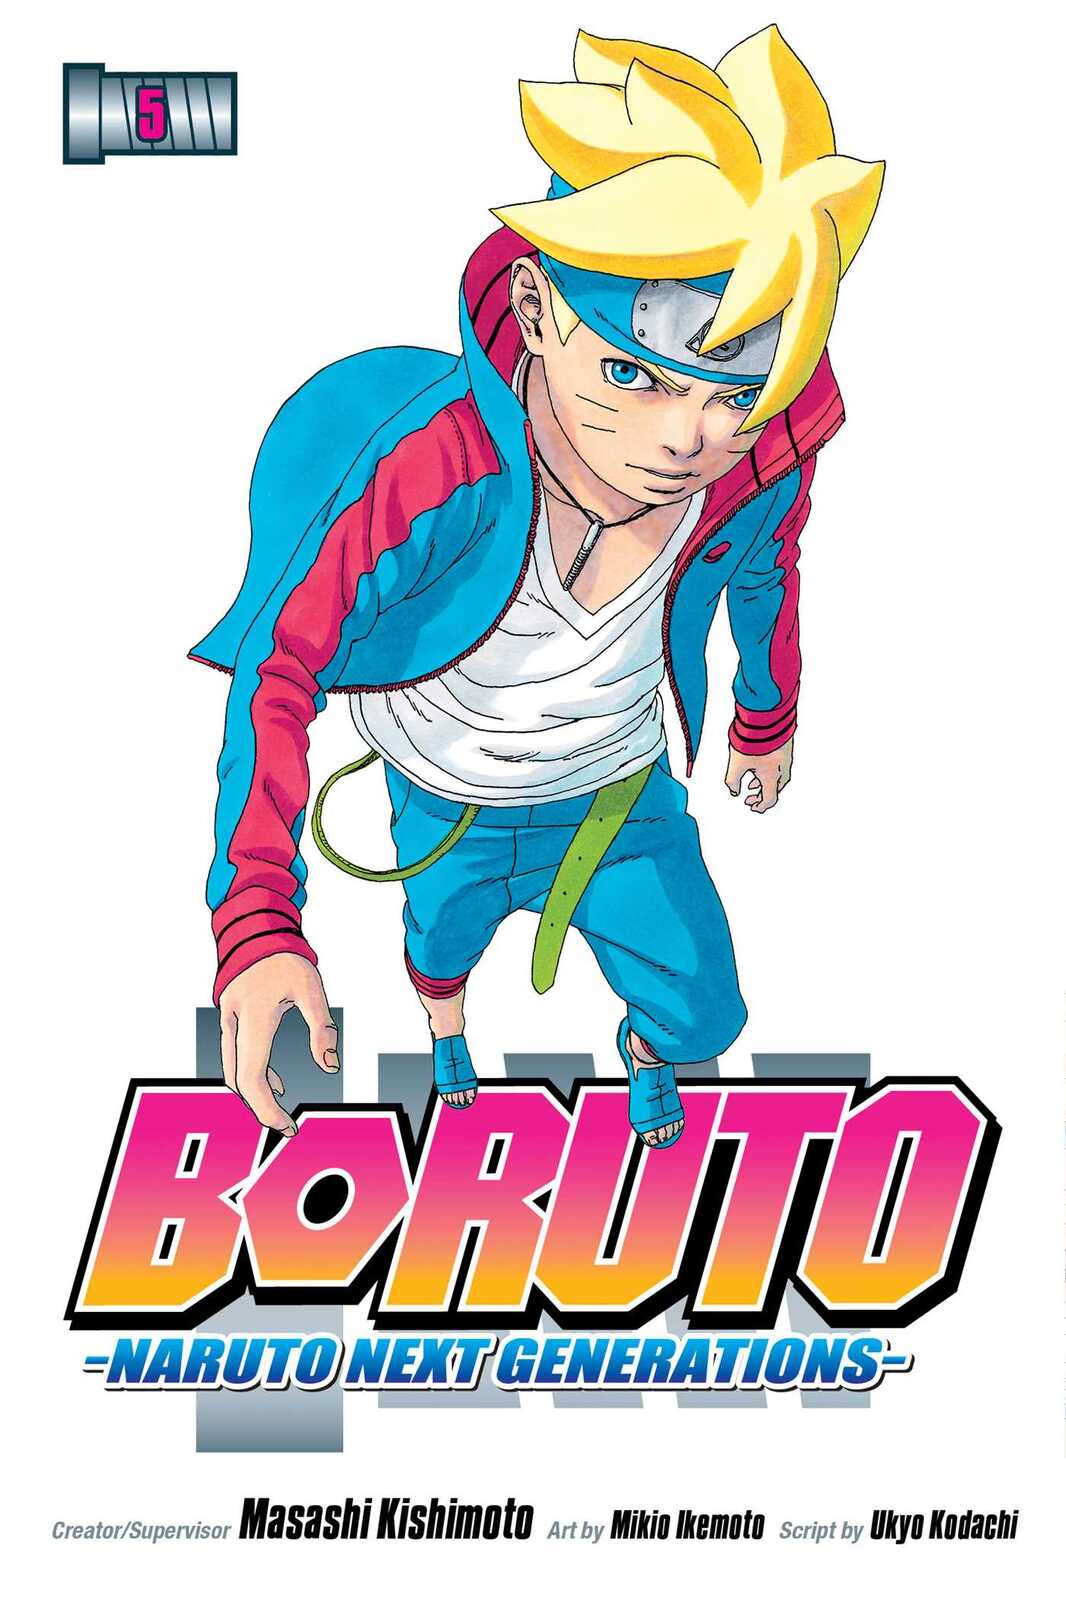 Boruto Explorer - A @VIZMedia anuncia Boruto: Naruto Next Generations, Set  #5 para Blu-Ray/DVD em inglês (dublagem). Lançamento: 21 de Abril. Episódios:  53 ao 66. #BORUTO